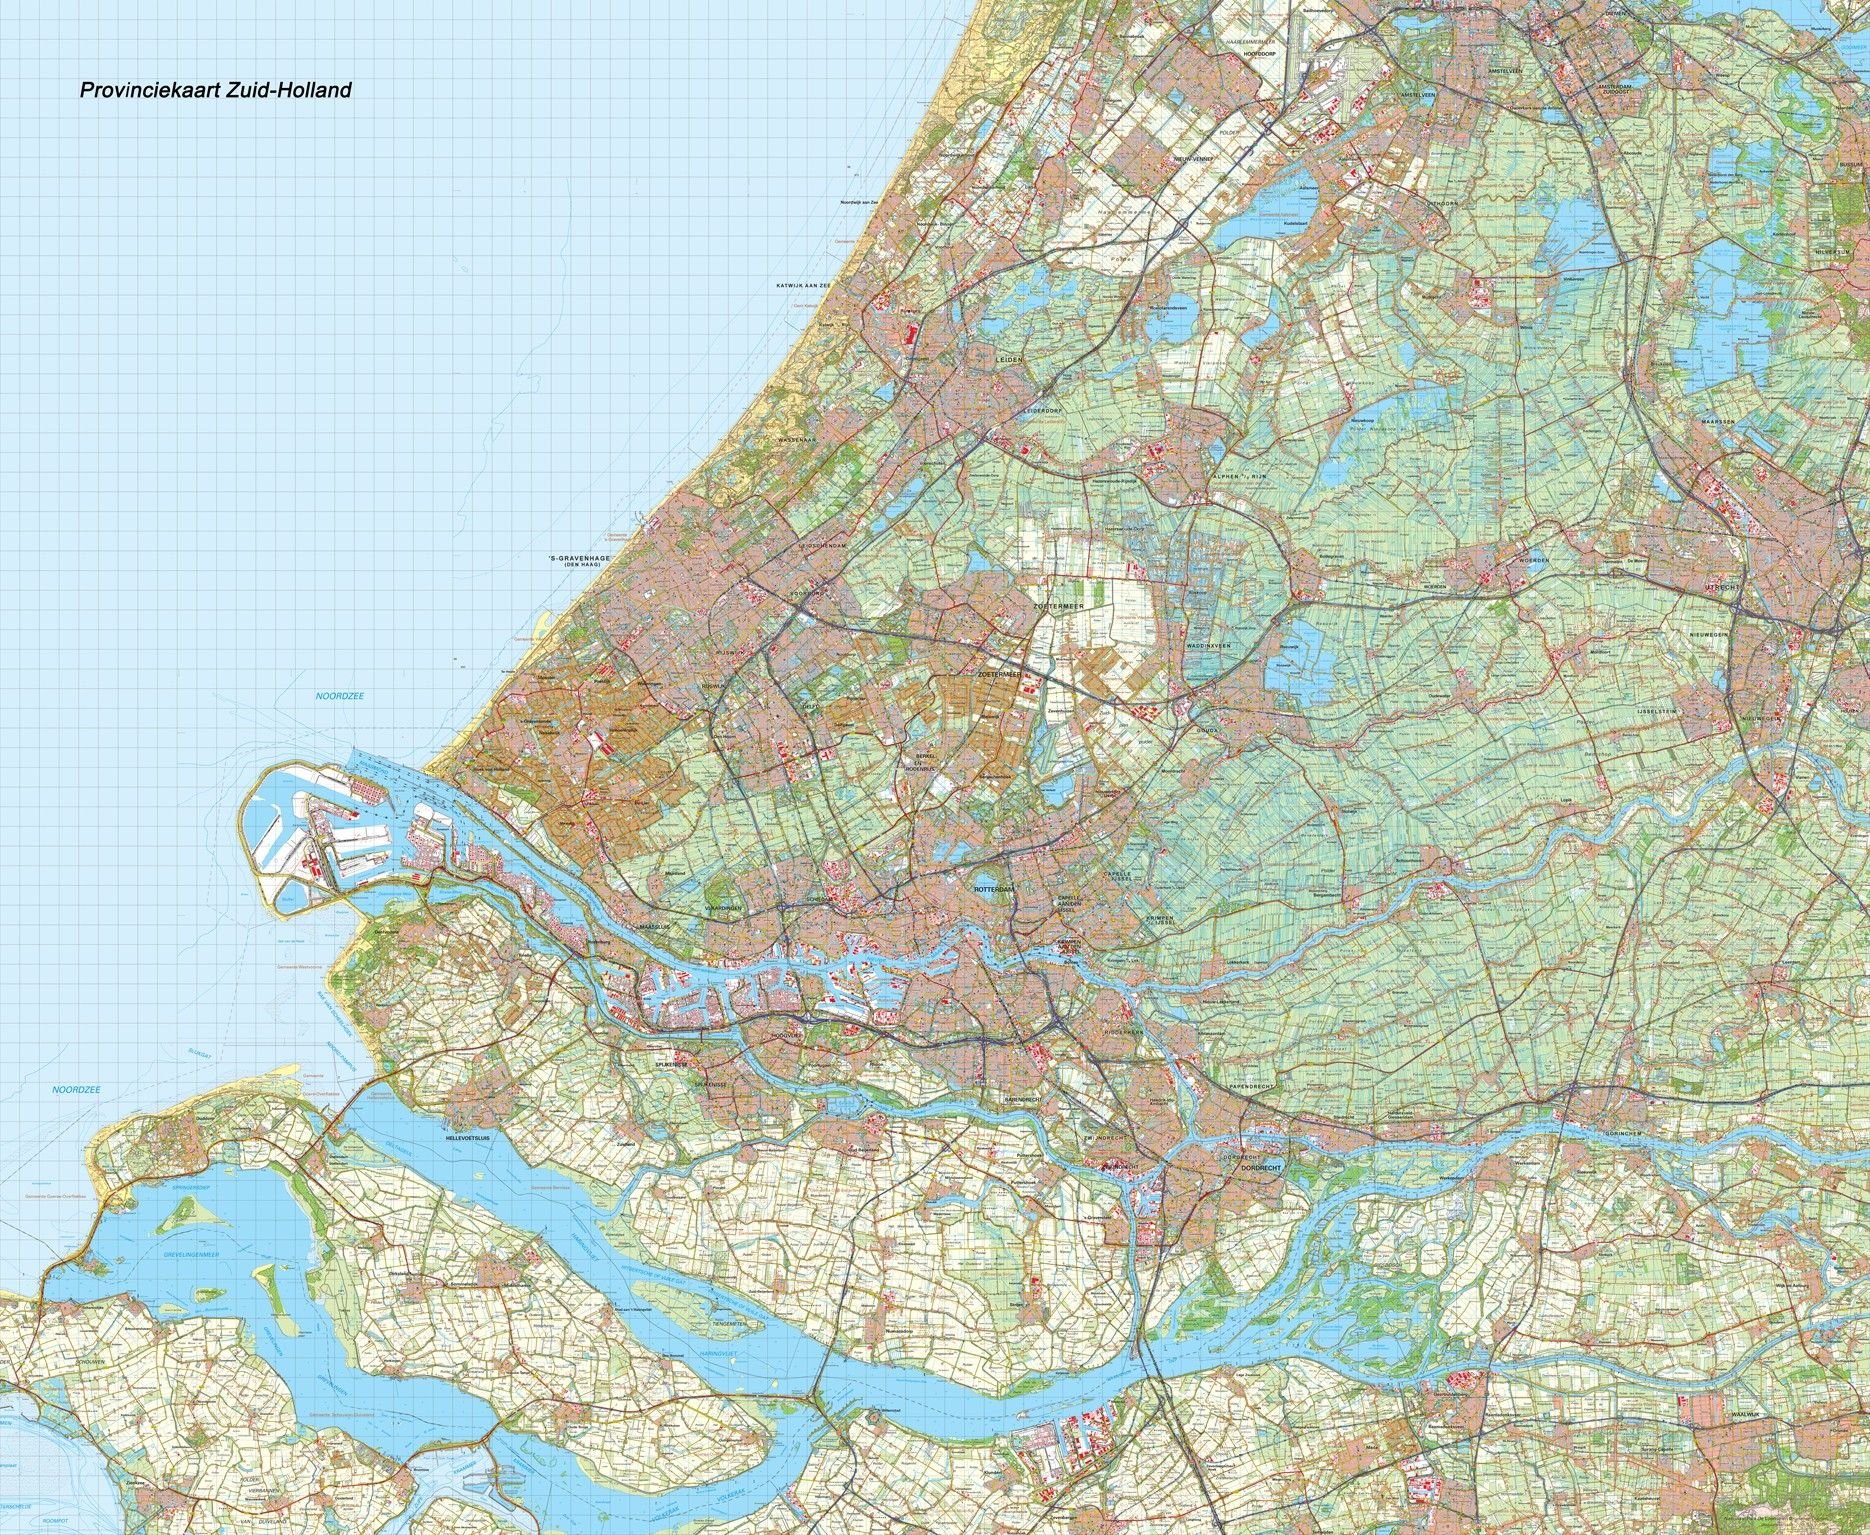 Provincie kaart Zuid Holland schaal 1:50.000